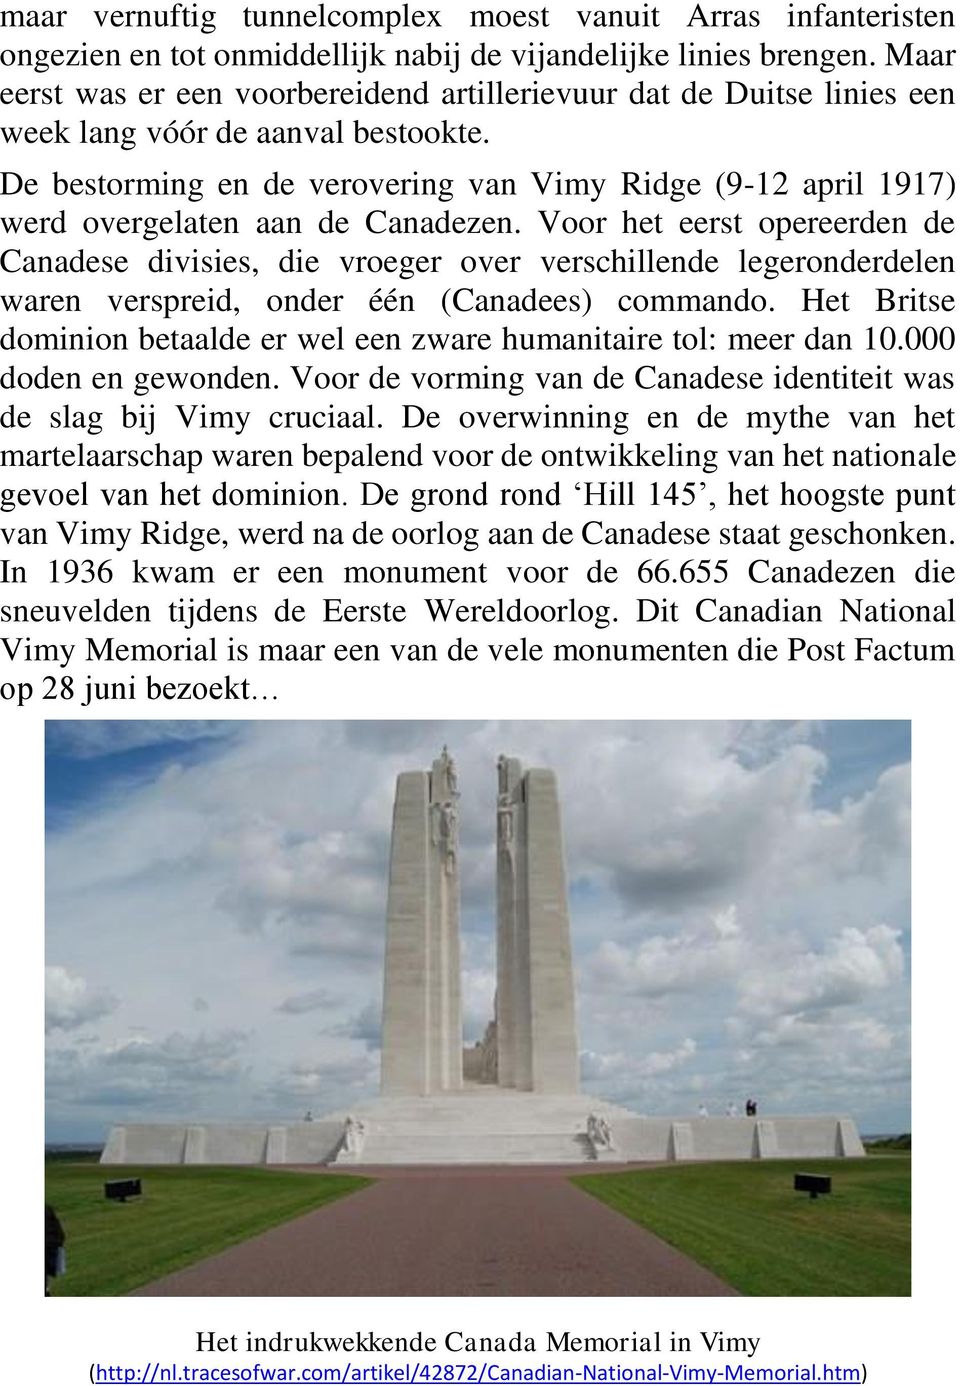 De bestorming en de verovering van Vimy Ridge (9-12 april 1917) werd overgelaten aan de Canadezen.